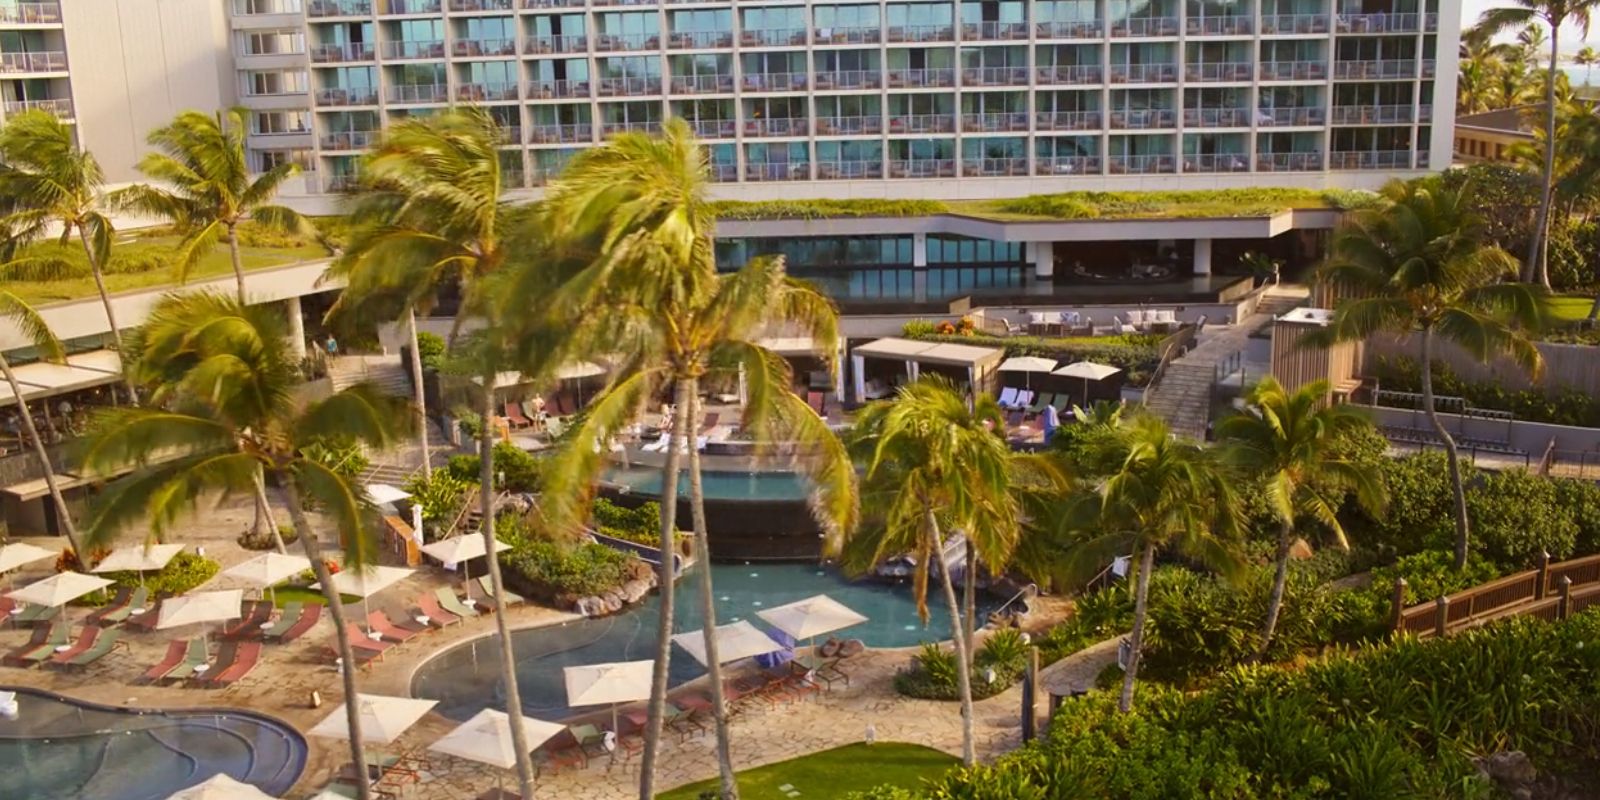 Dieses Bild zeigt Palmen vor einem tropischen Resort.